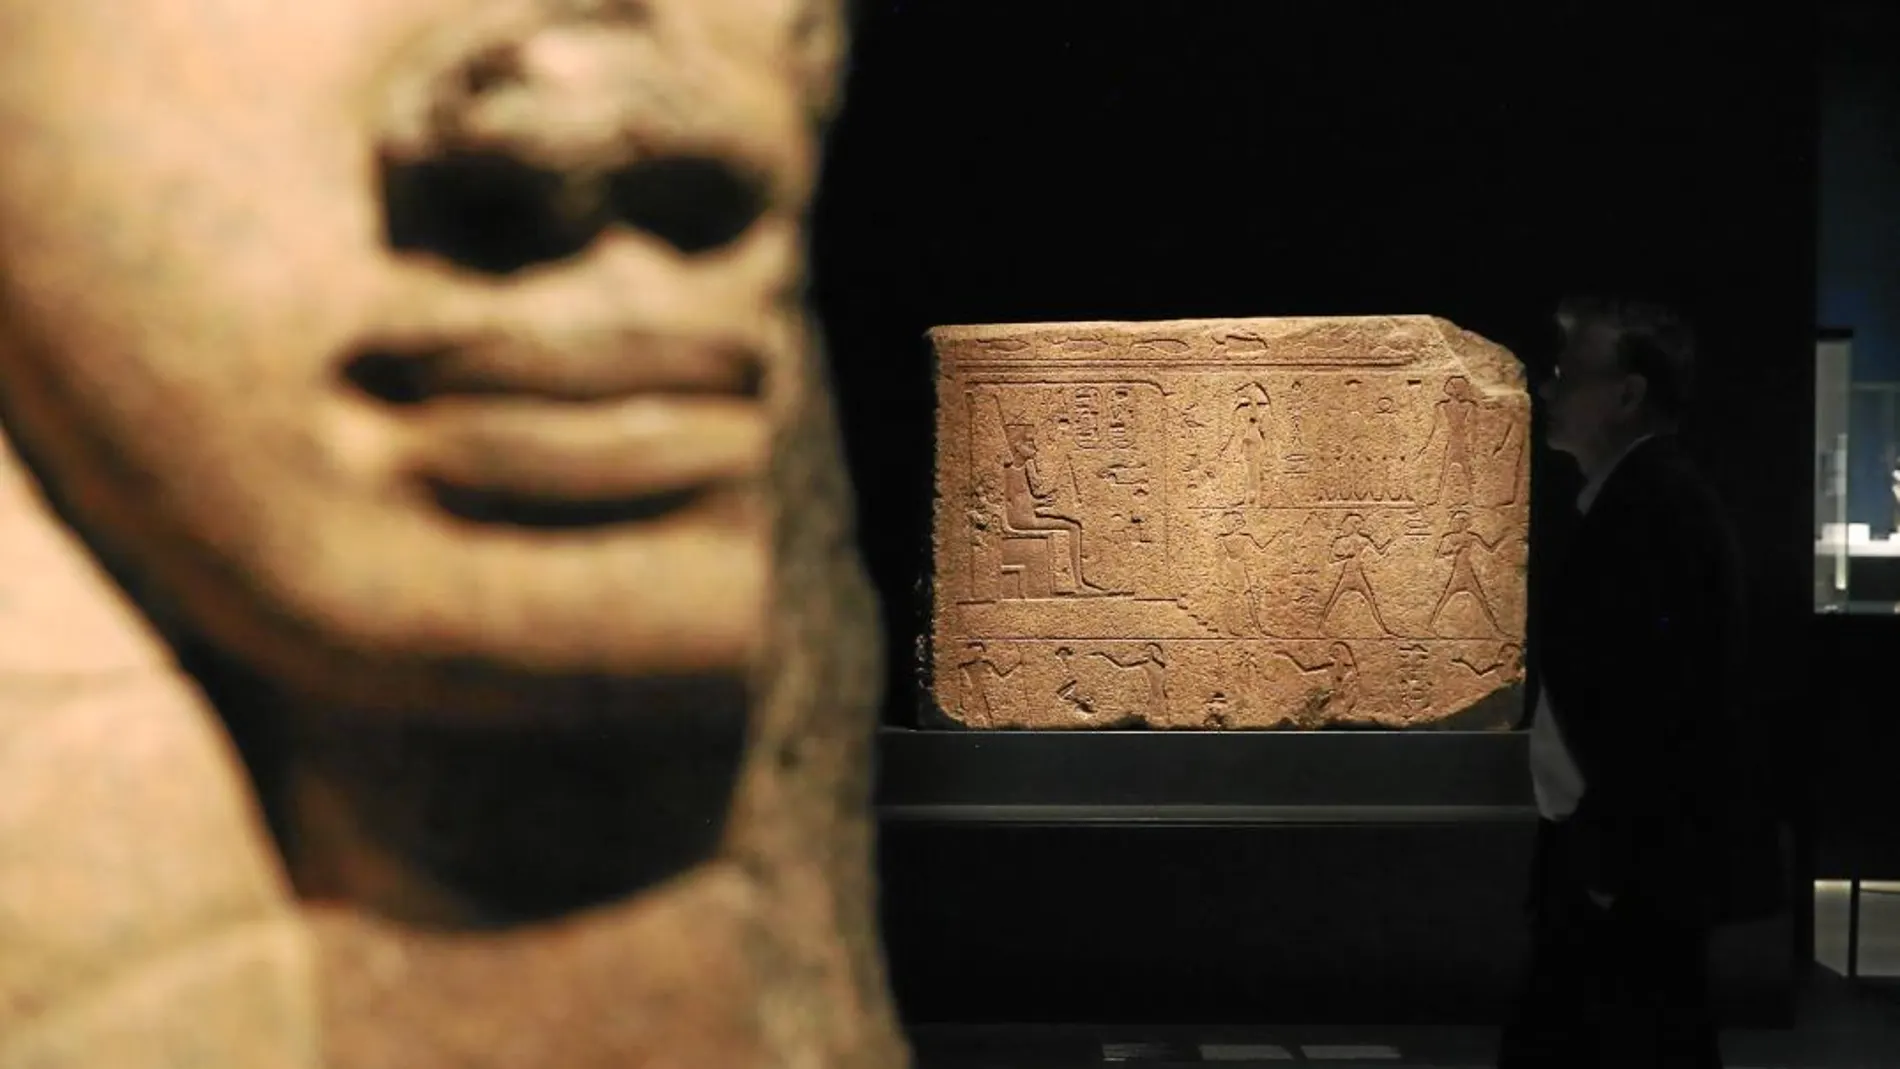 En primer plano, un capitel con la forma de la diosa Hathor procedente del templo de Bastet. Al fondo, un relieve del faraón Osorkon II que formó parte de un portal también del templo de Bastet